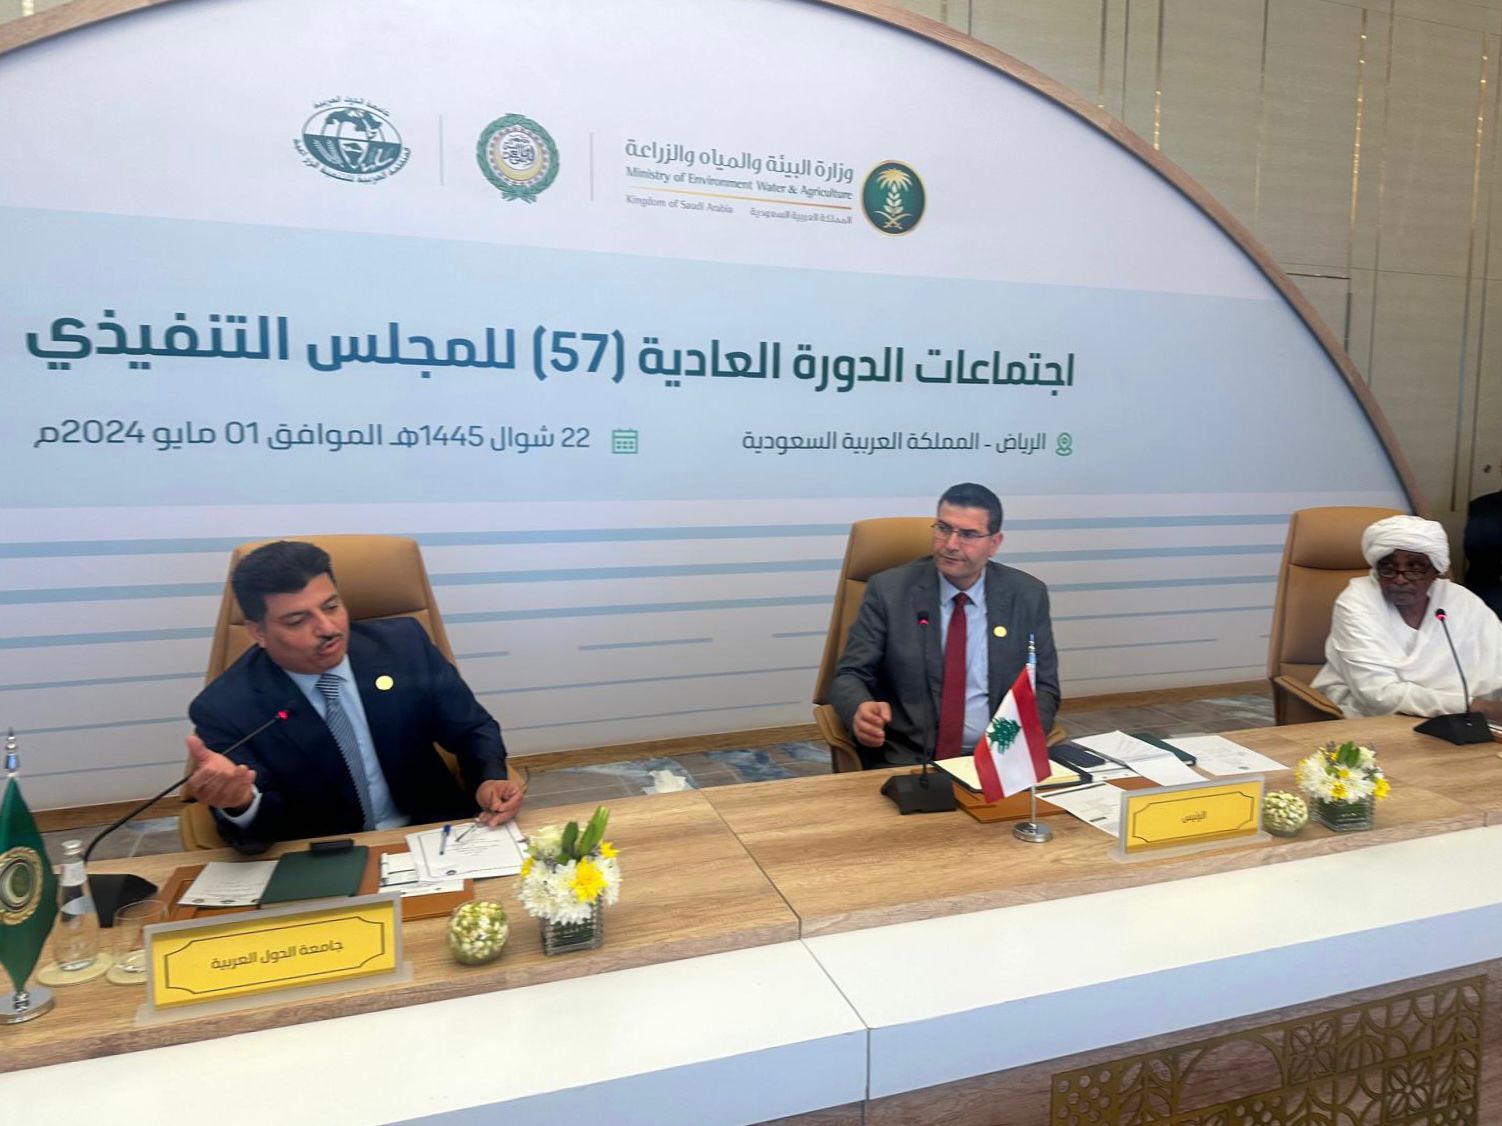 انطلاق اعمال الدورة 57 المجلس التنفيذي للمنظمة العربية للتنمية الزراعية